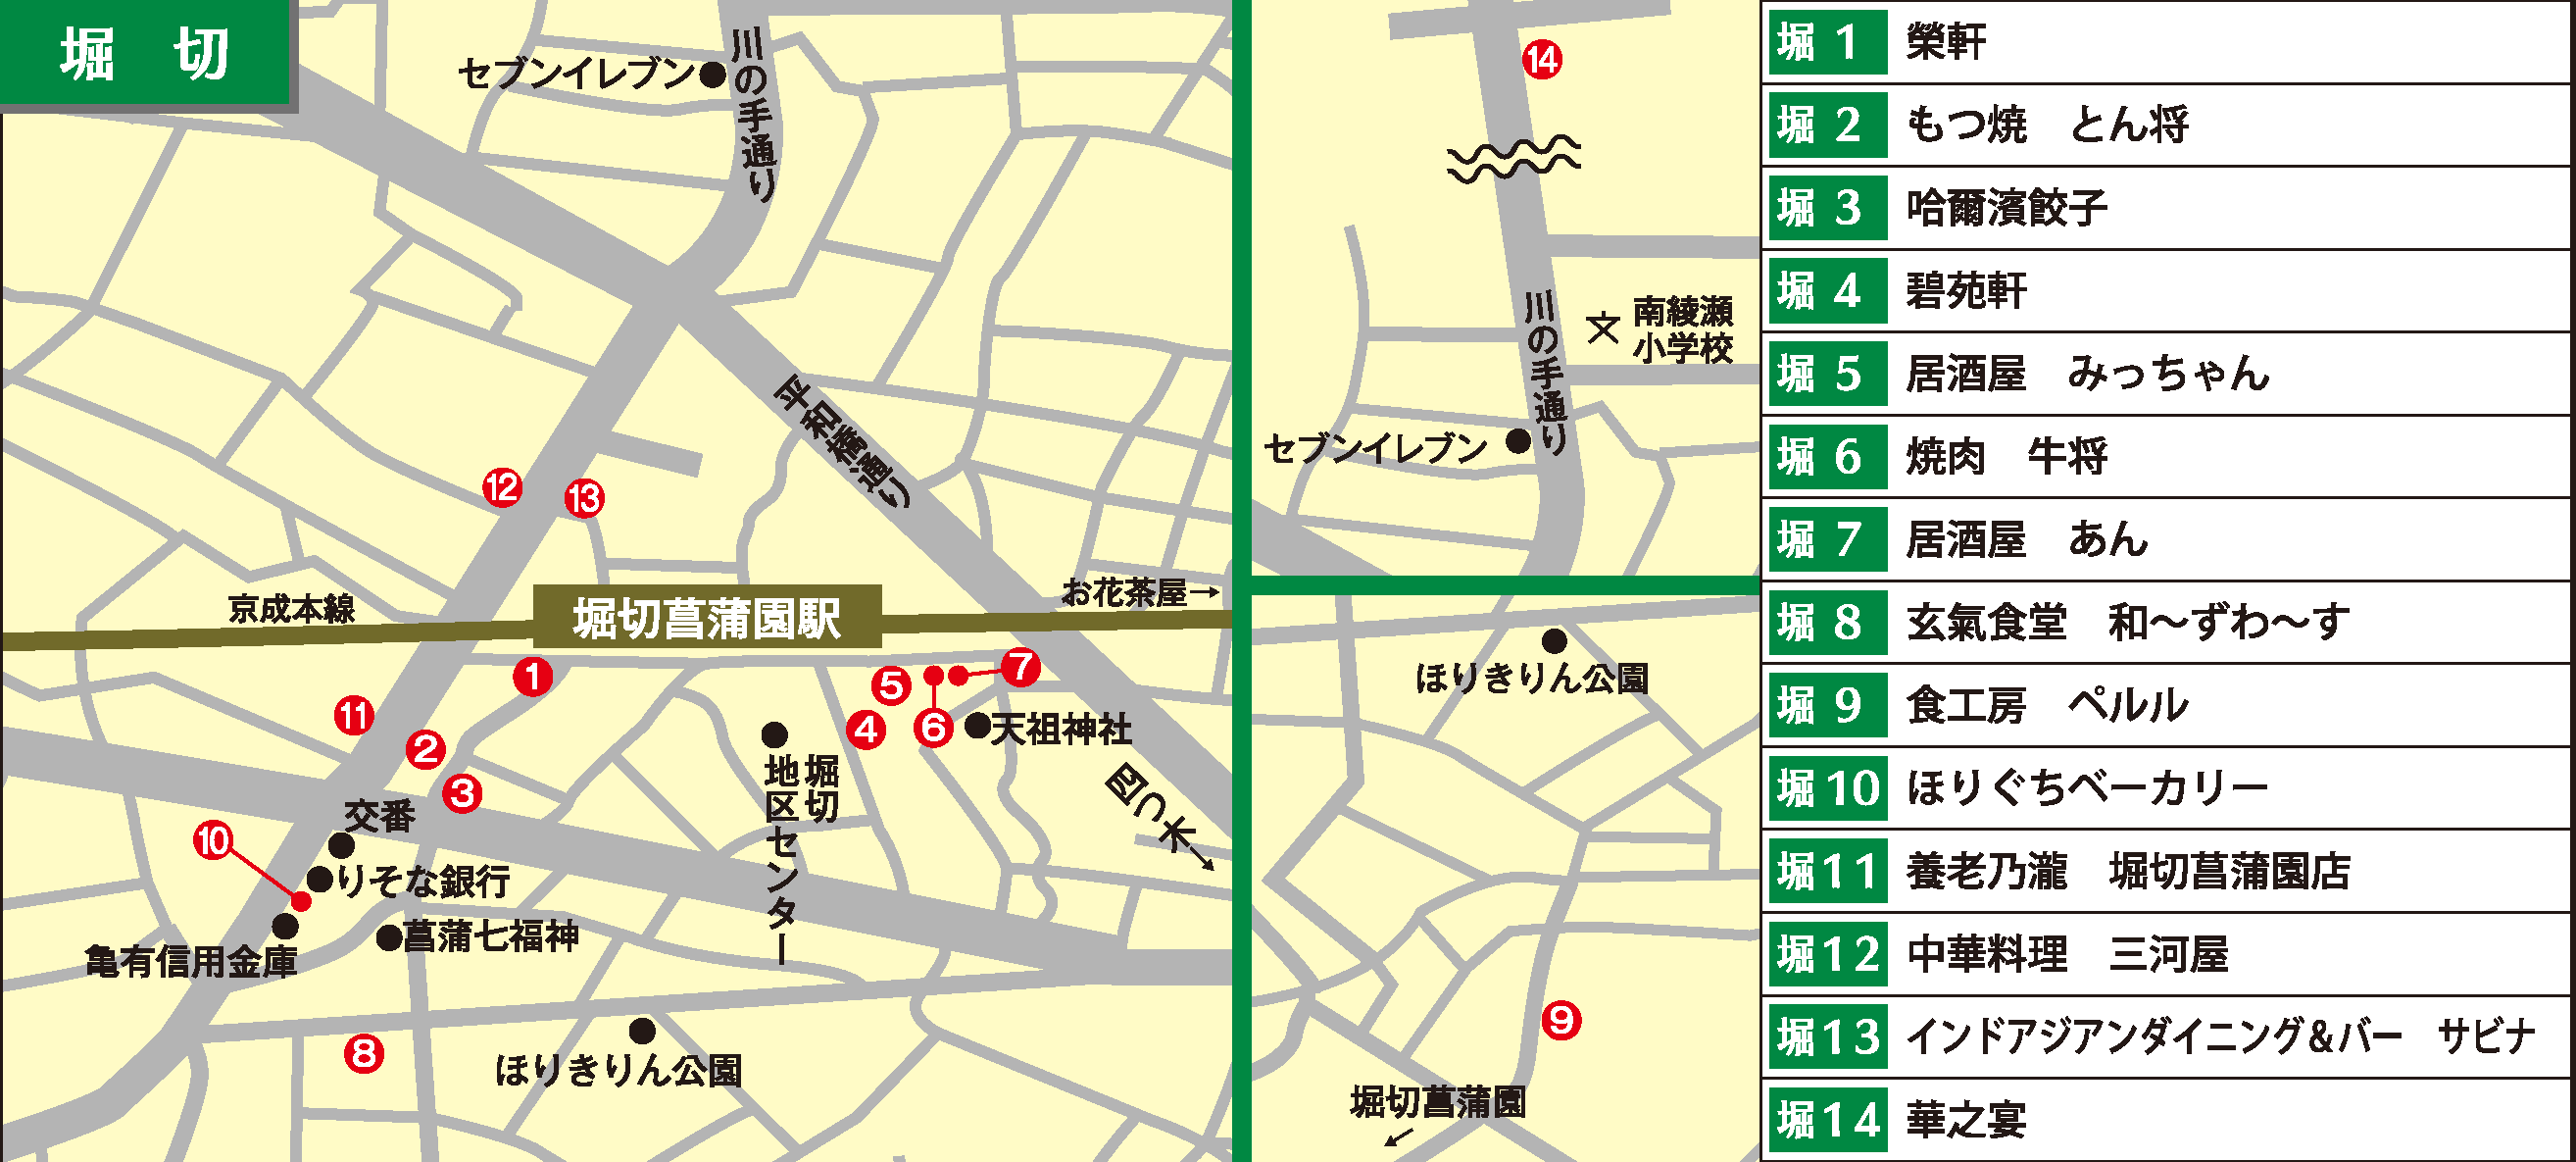 ph_nf2021_horikiri-map